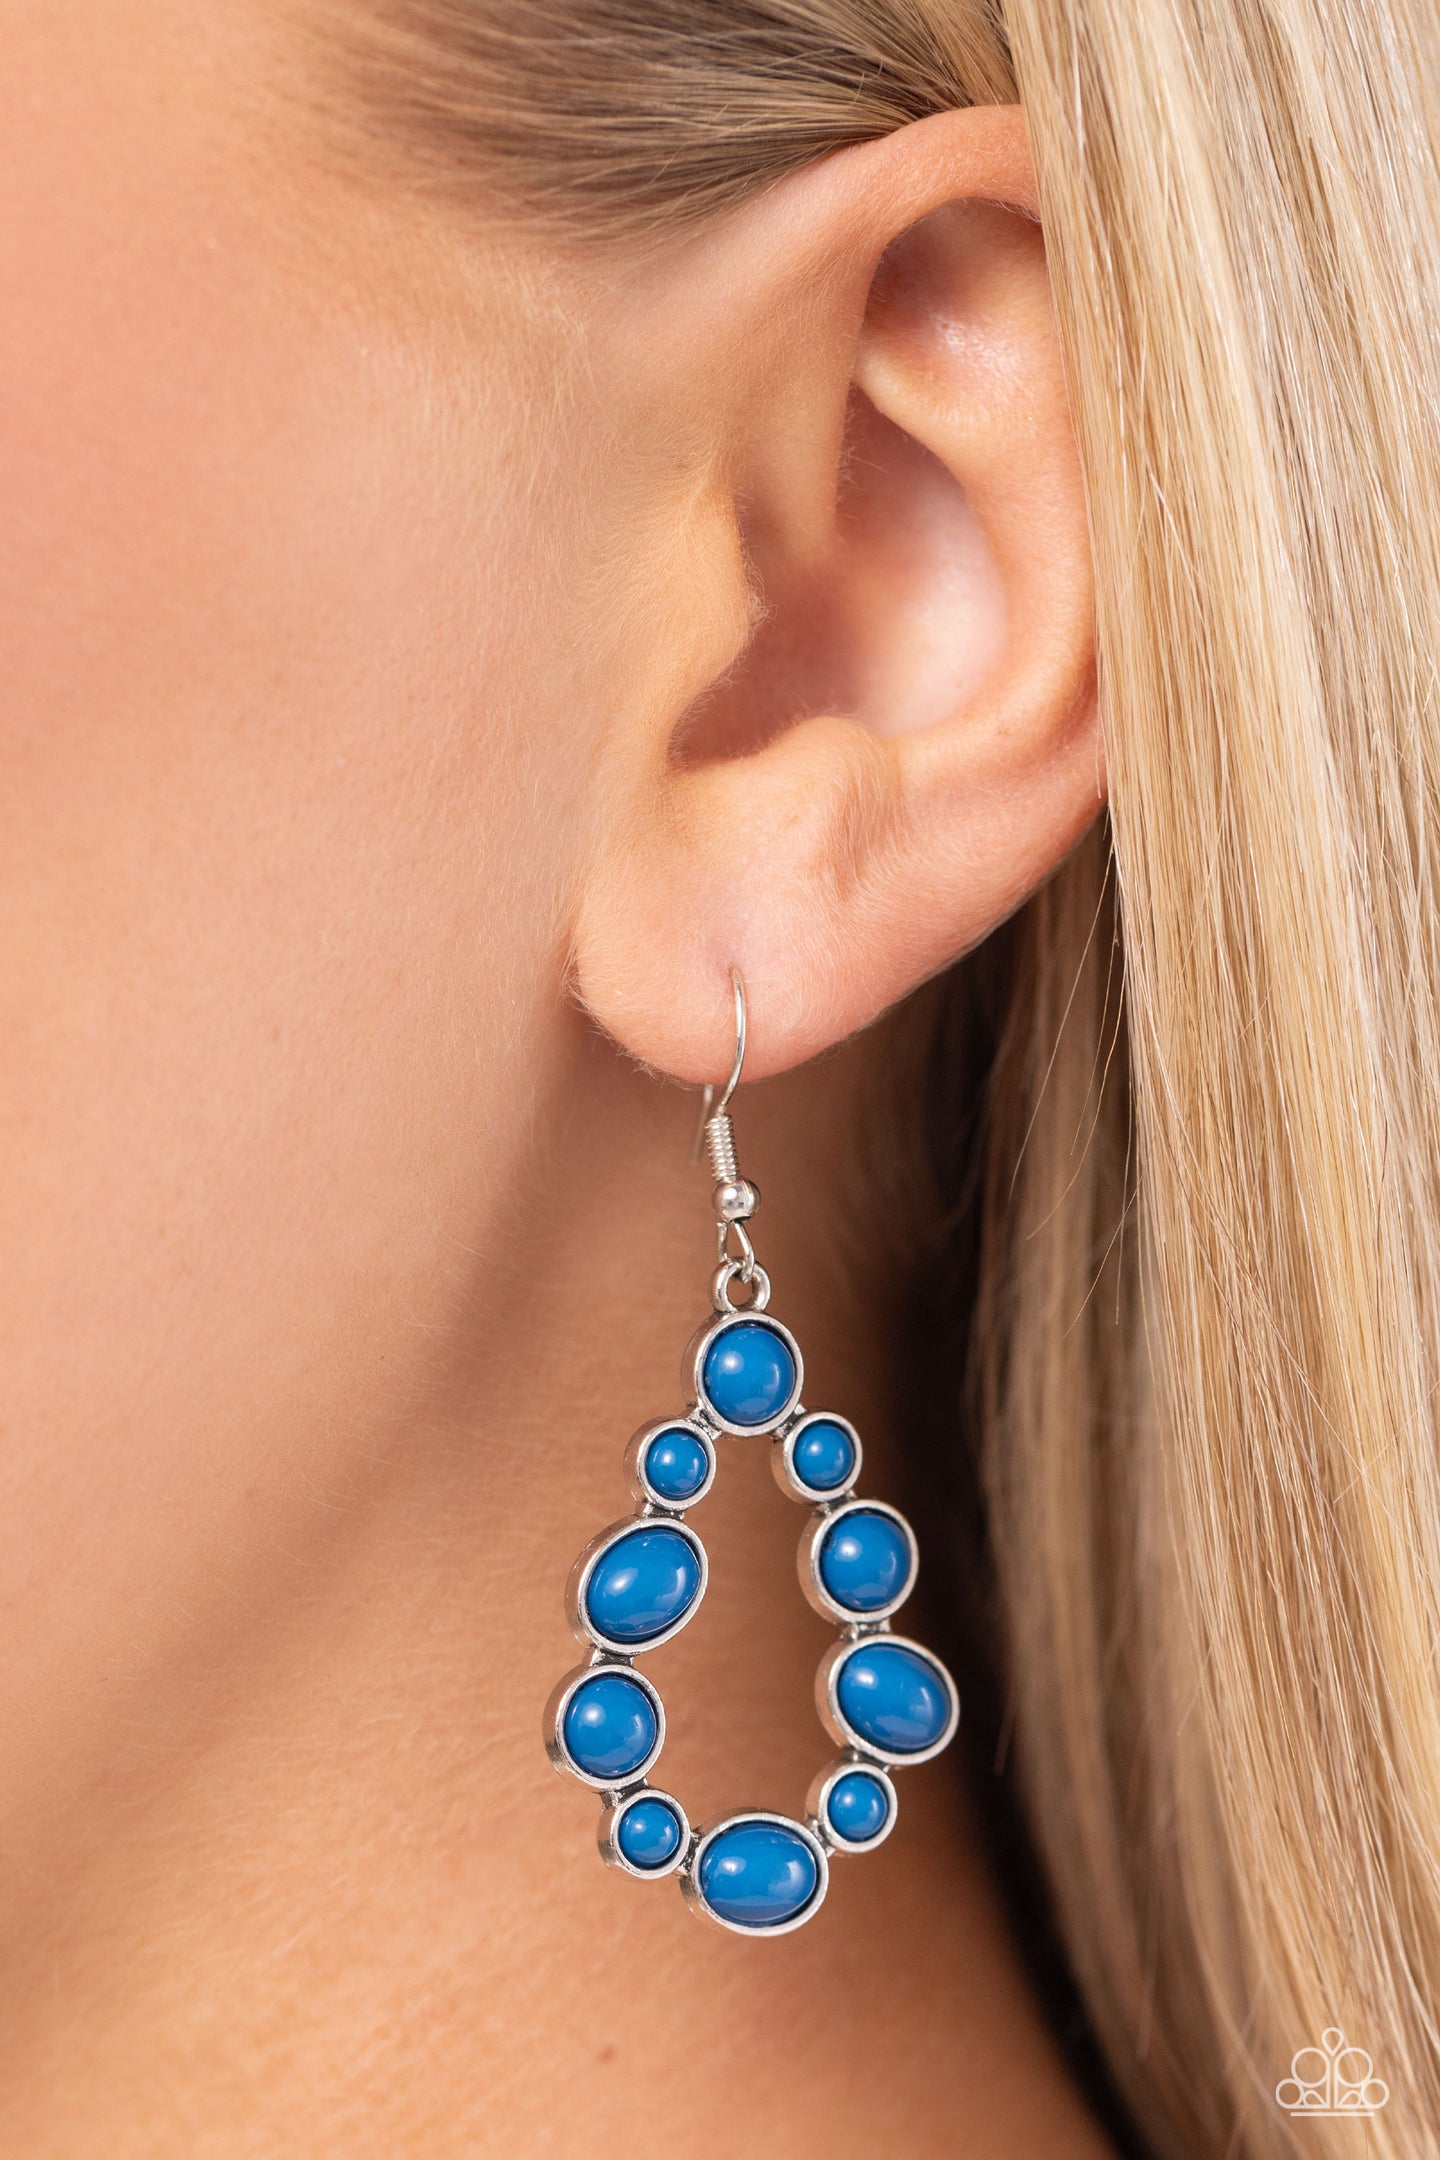 POP-ular Party - Blue earrings